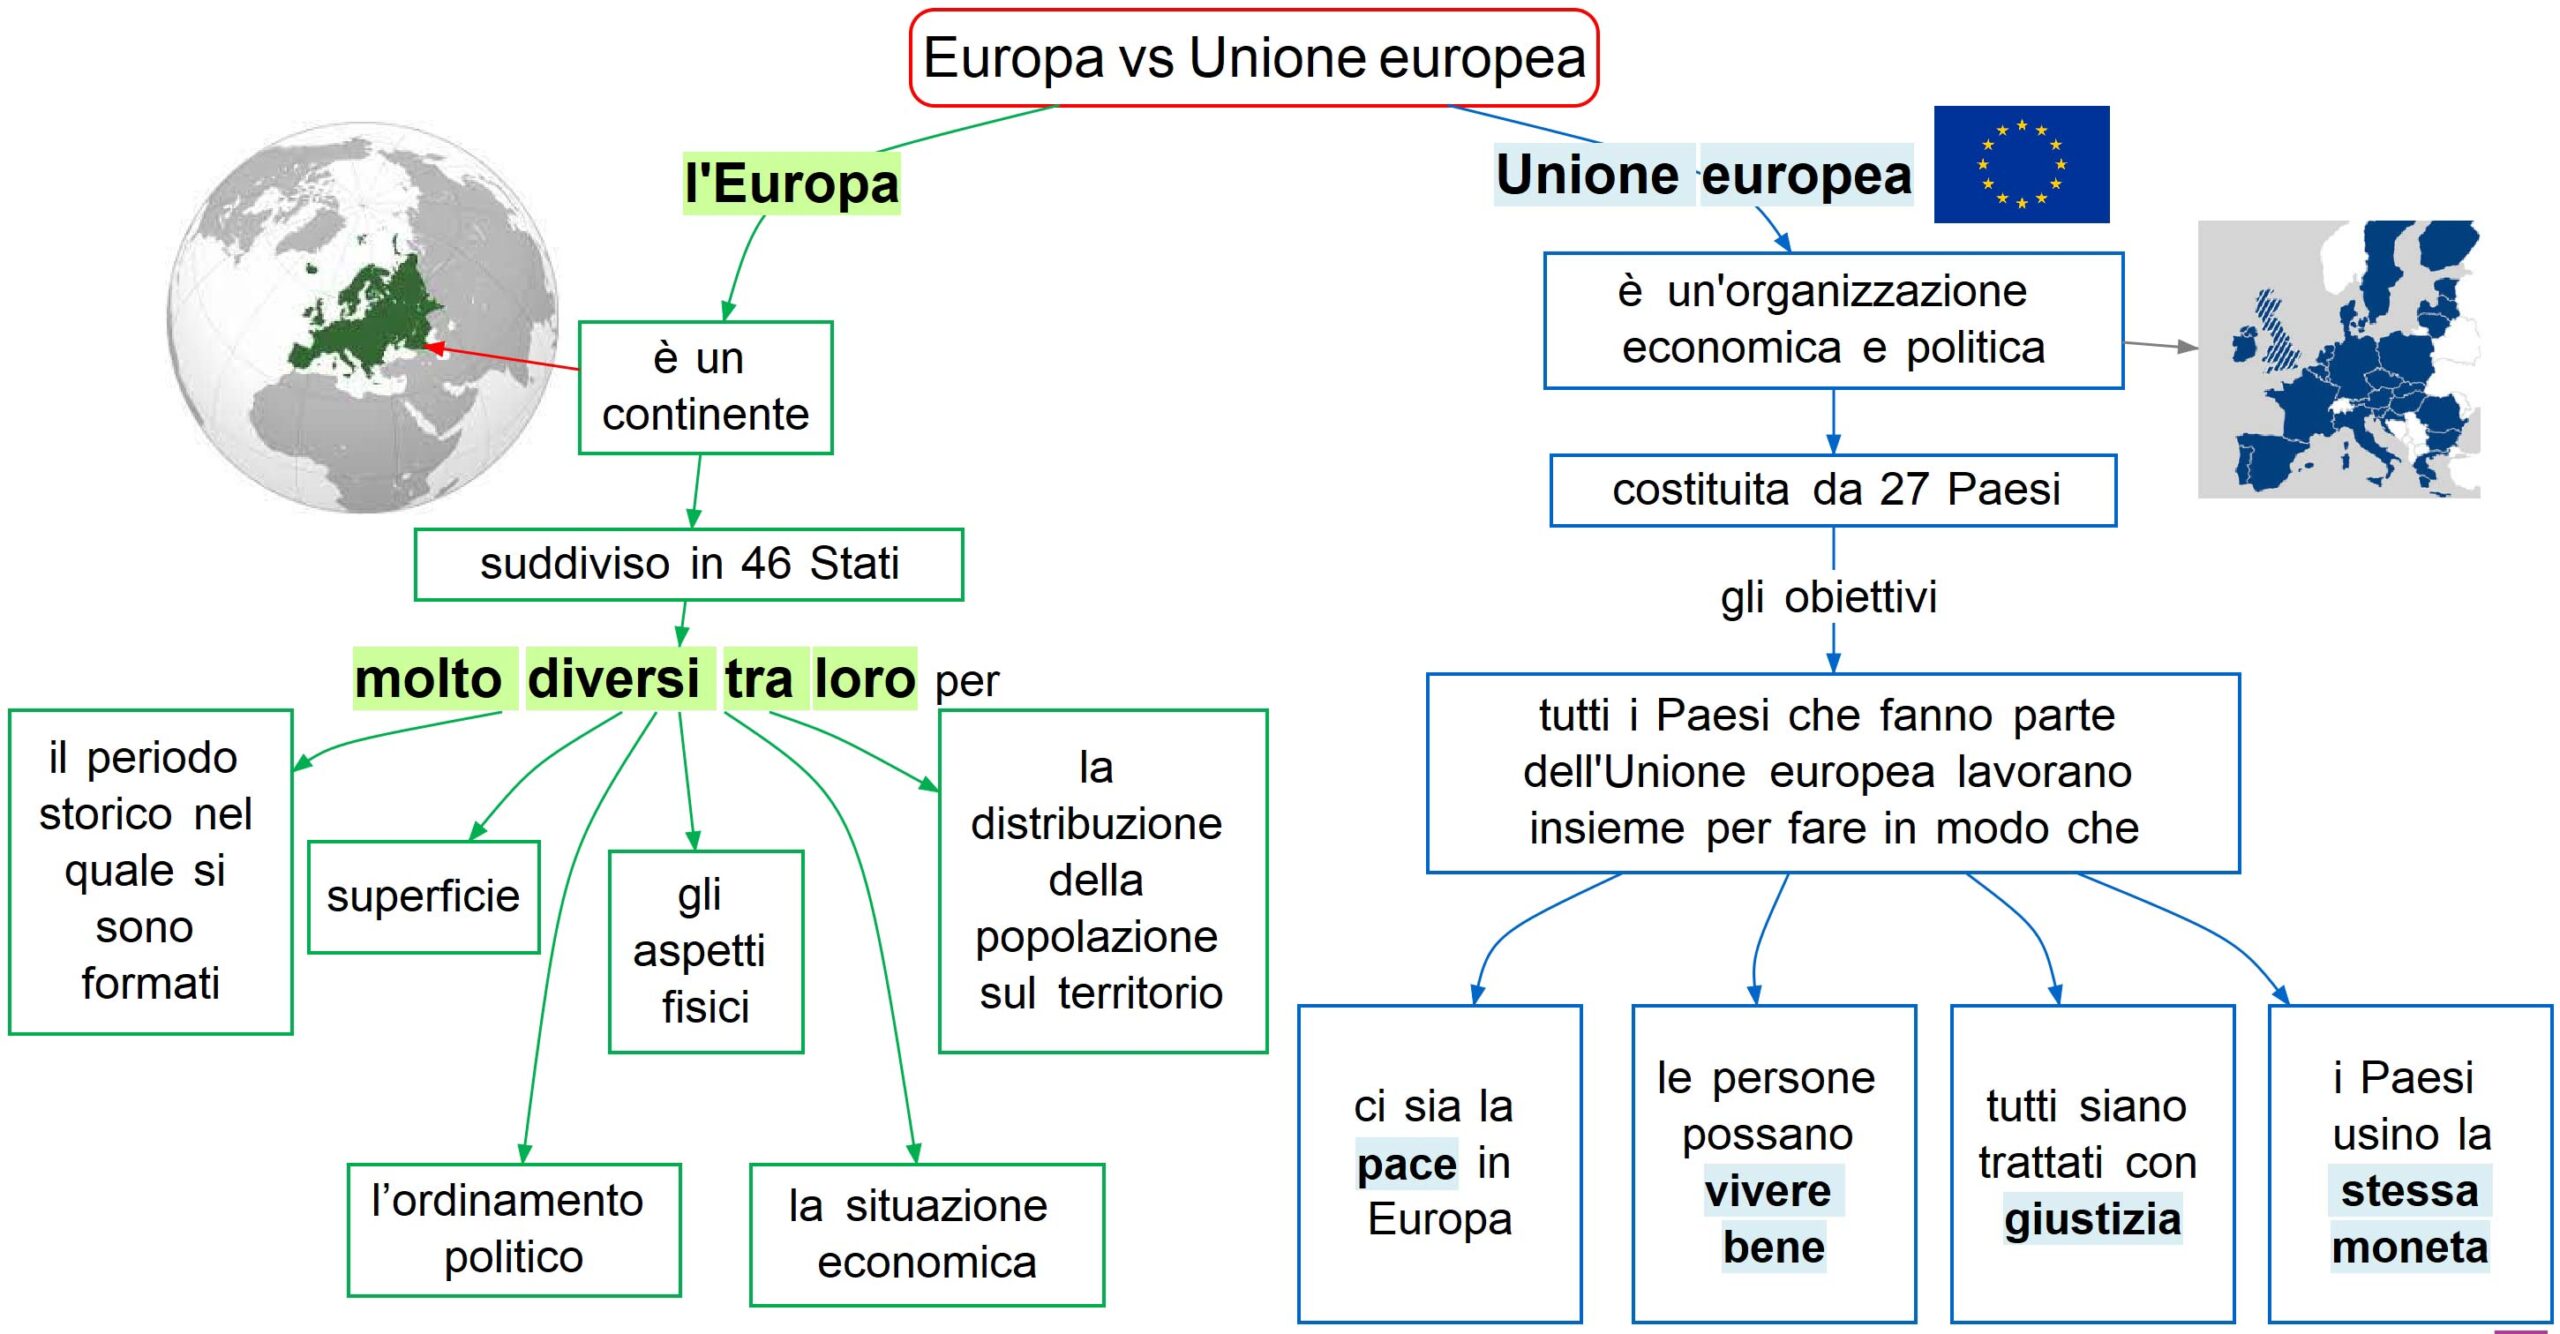 Europa vs Unione europea